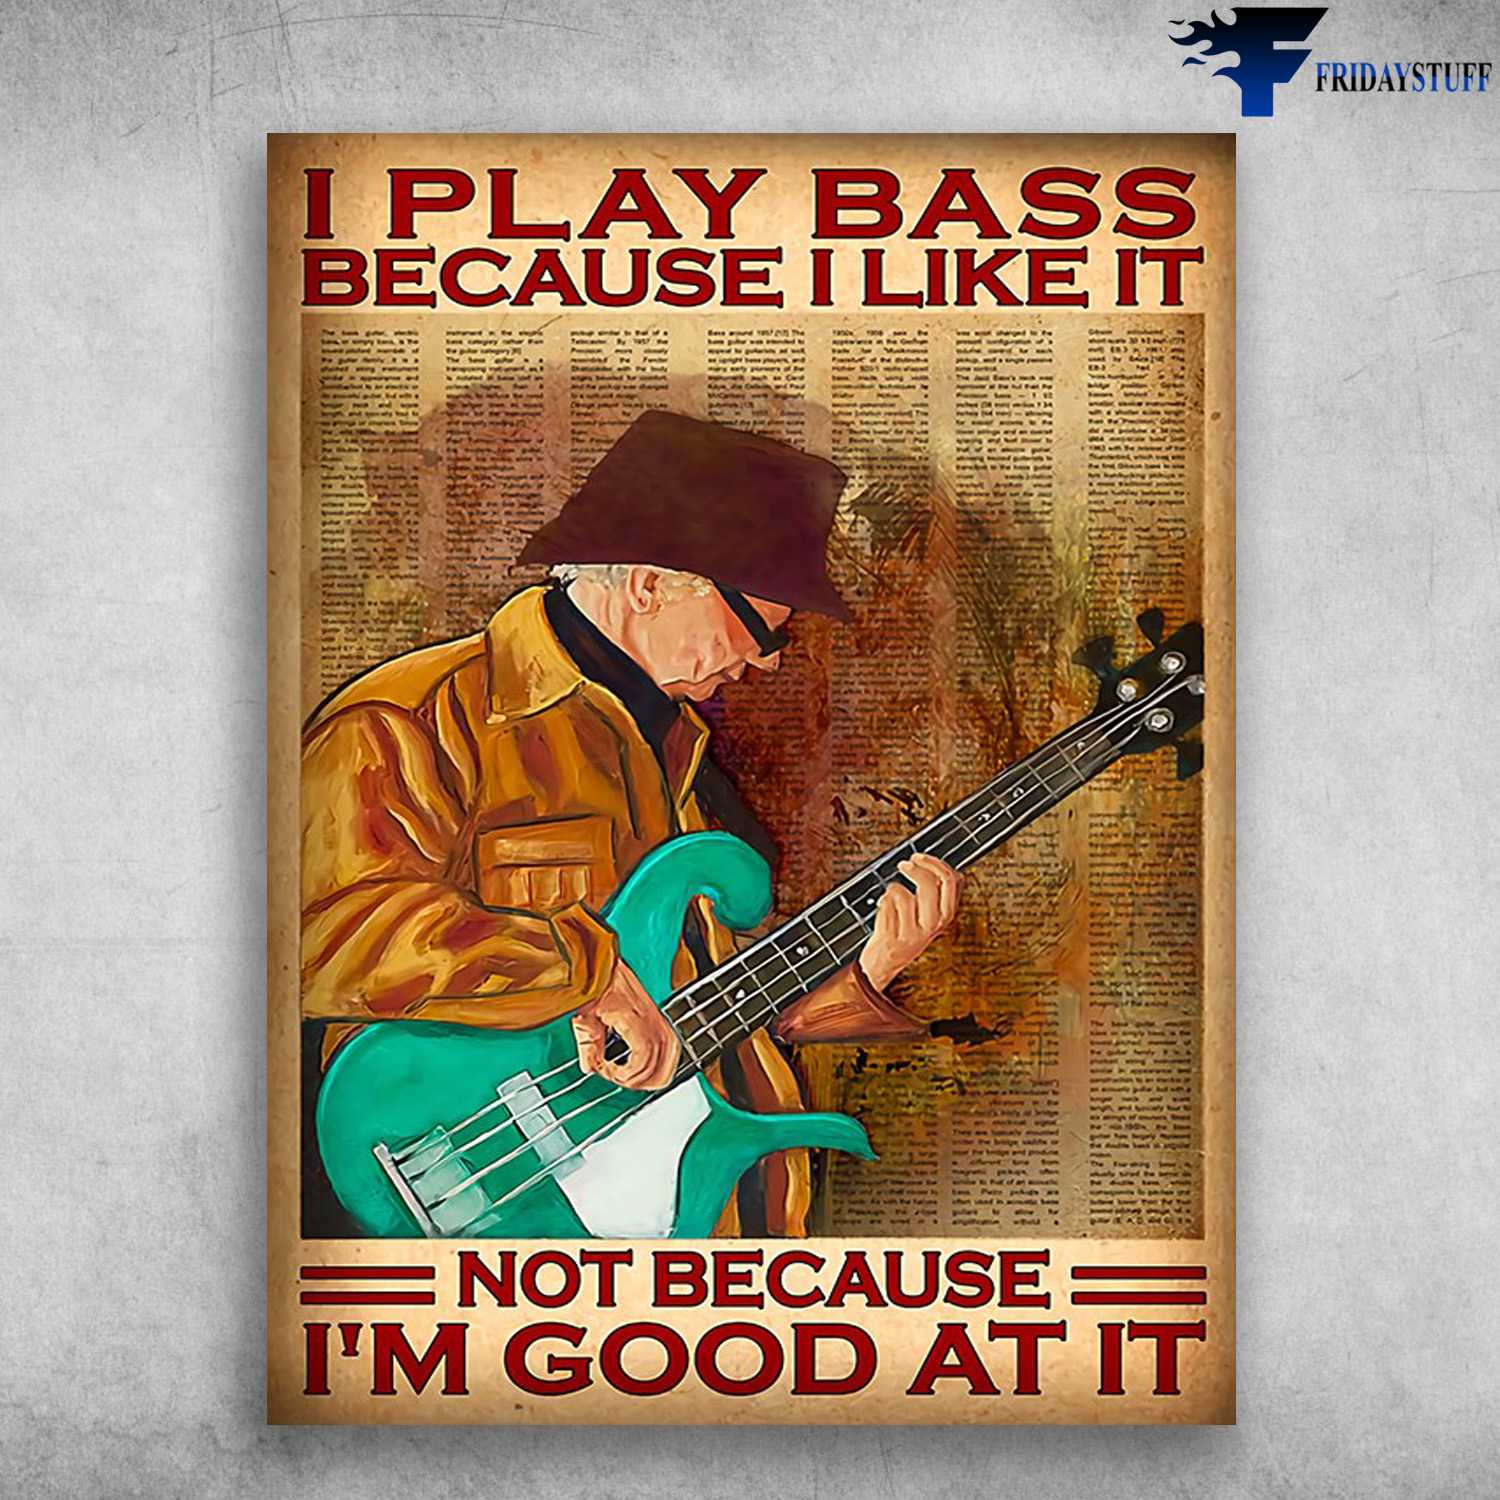 Old Man Guitar, Bass Guitar - I Play Bass, Not Because I'm Good At It